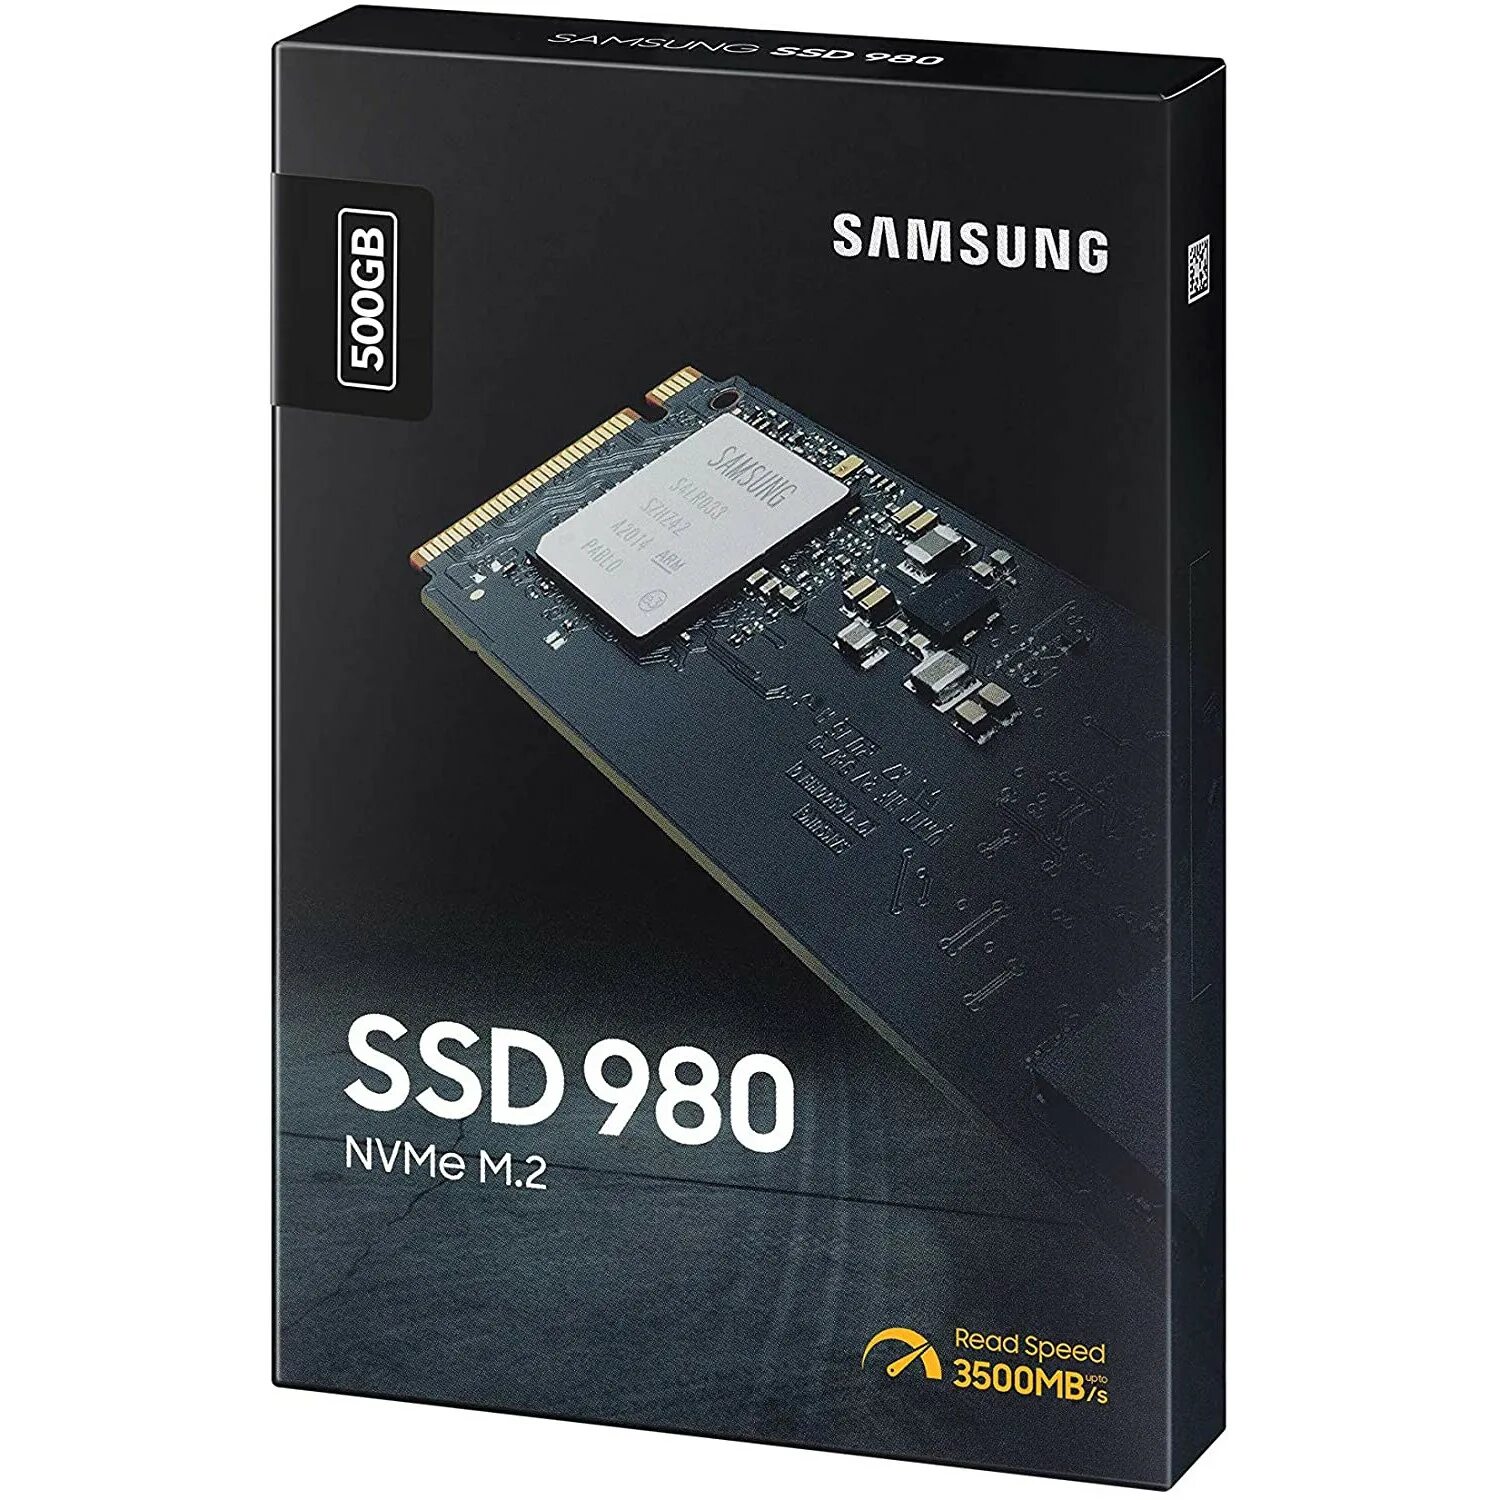 Samsung ssd 980 evo. SSD Samsung 500gb. Samsung 980 1tb MZ-v8v1t0bw. Samsung 980 EVO 500gb. Samsung 980 250gb MZ-v8v250bw.